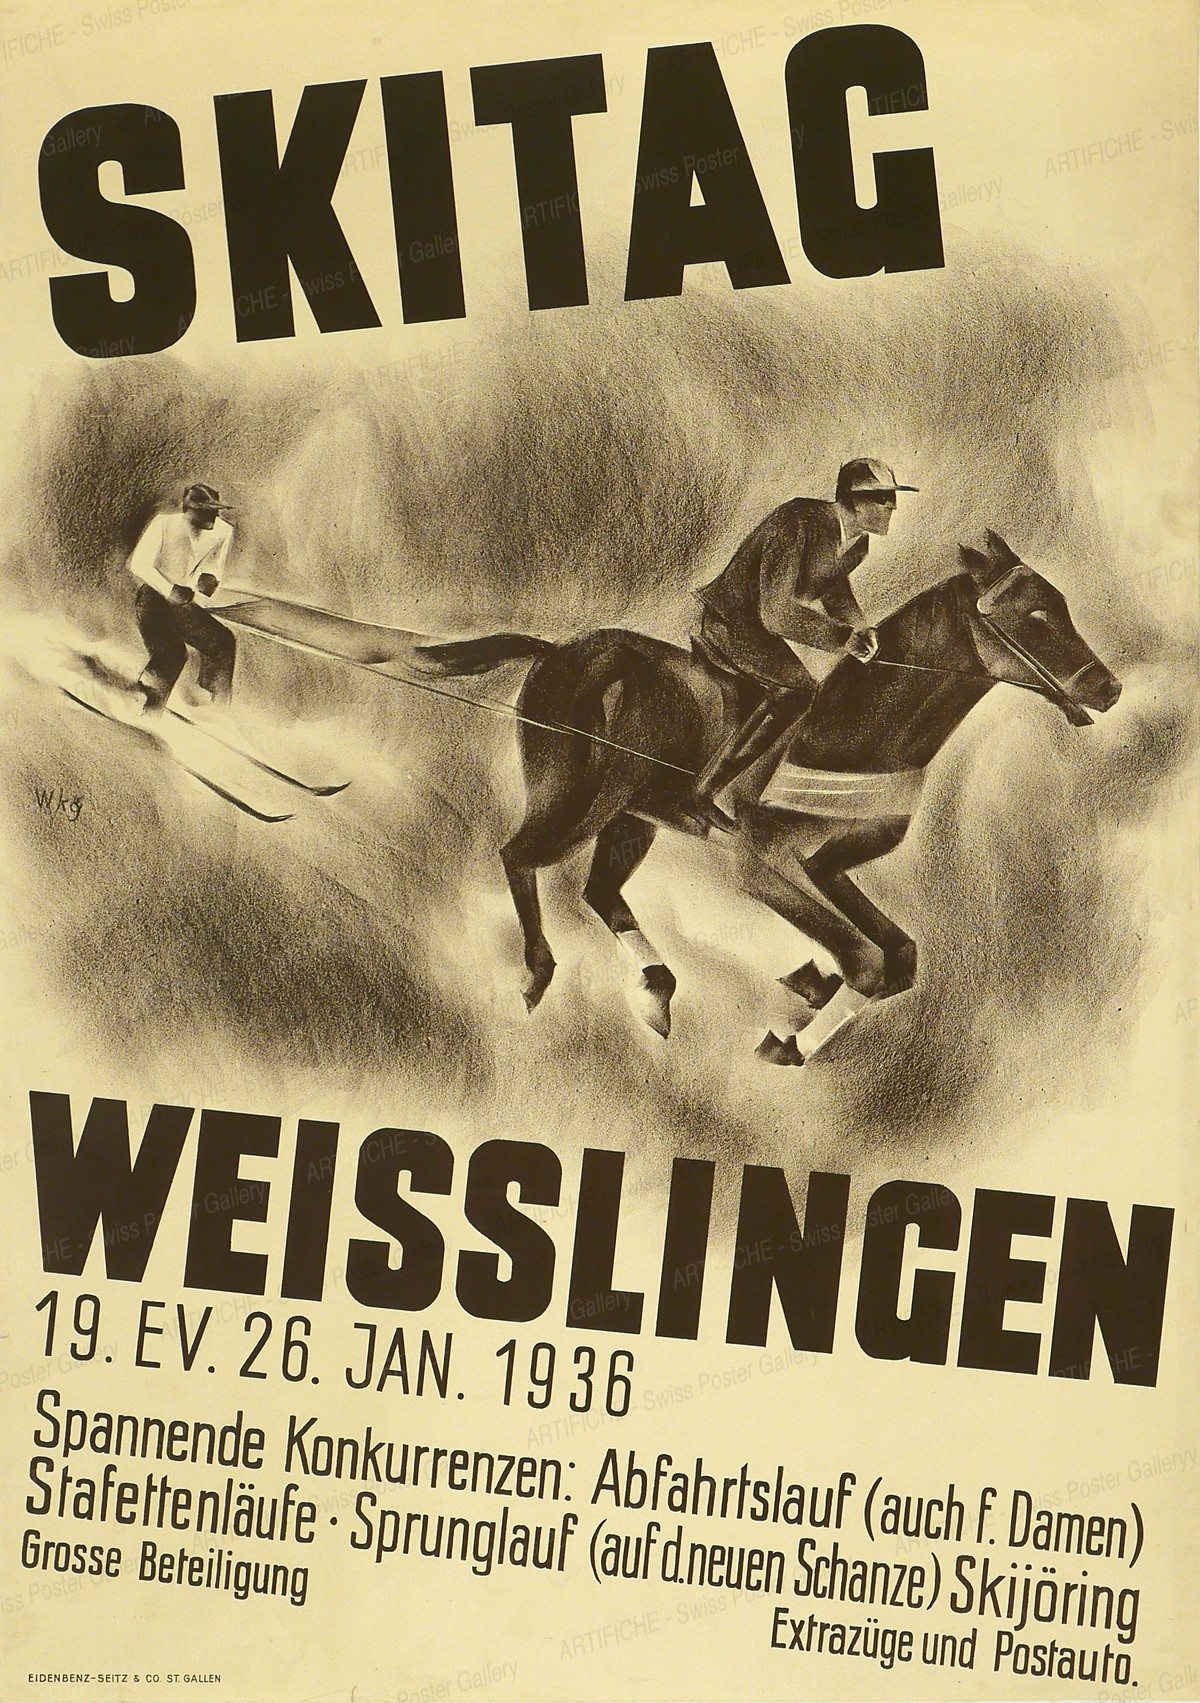 Skitag Weisslingen 19. ev. 26. Jan. 1936, Werner Weiskönig